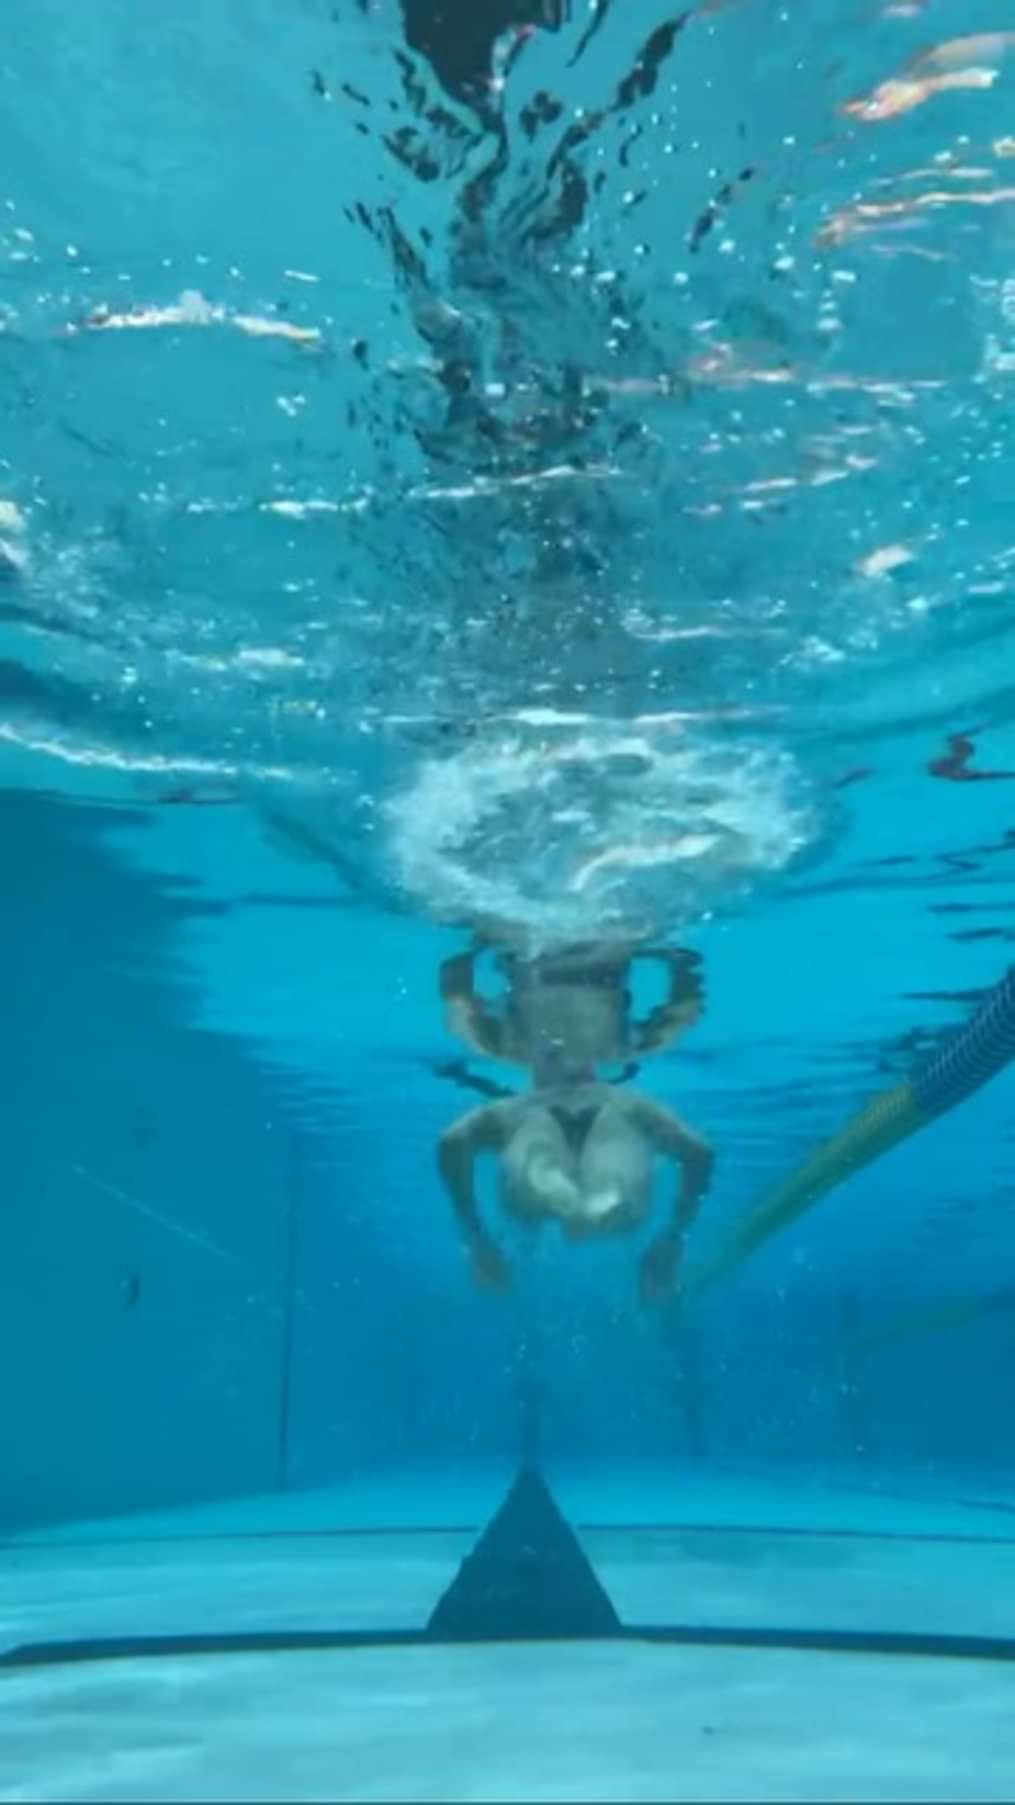 [男性] 女性用競泳水着画像掲示板へ投稿されたまりこ様の女性用競泳水着画像 No.16993033520001